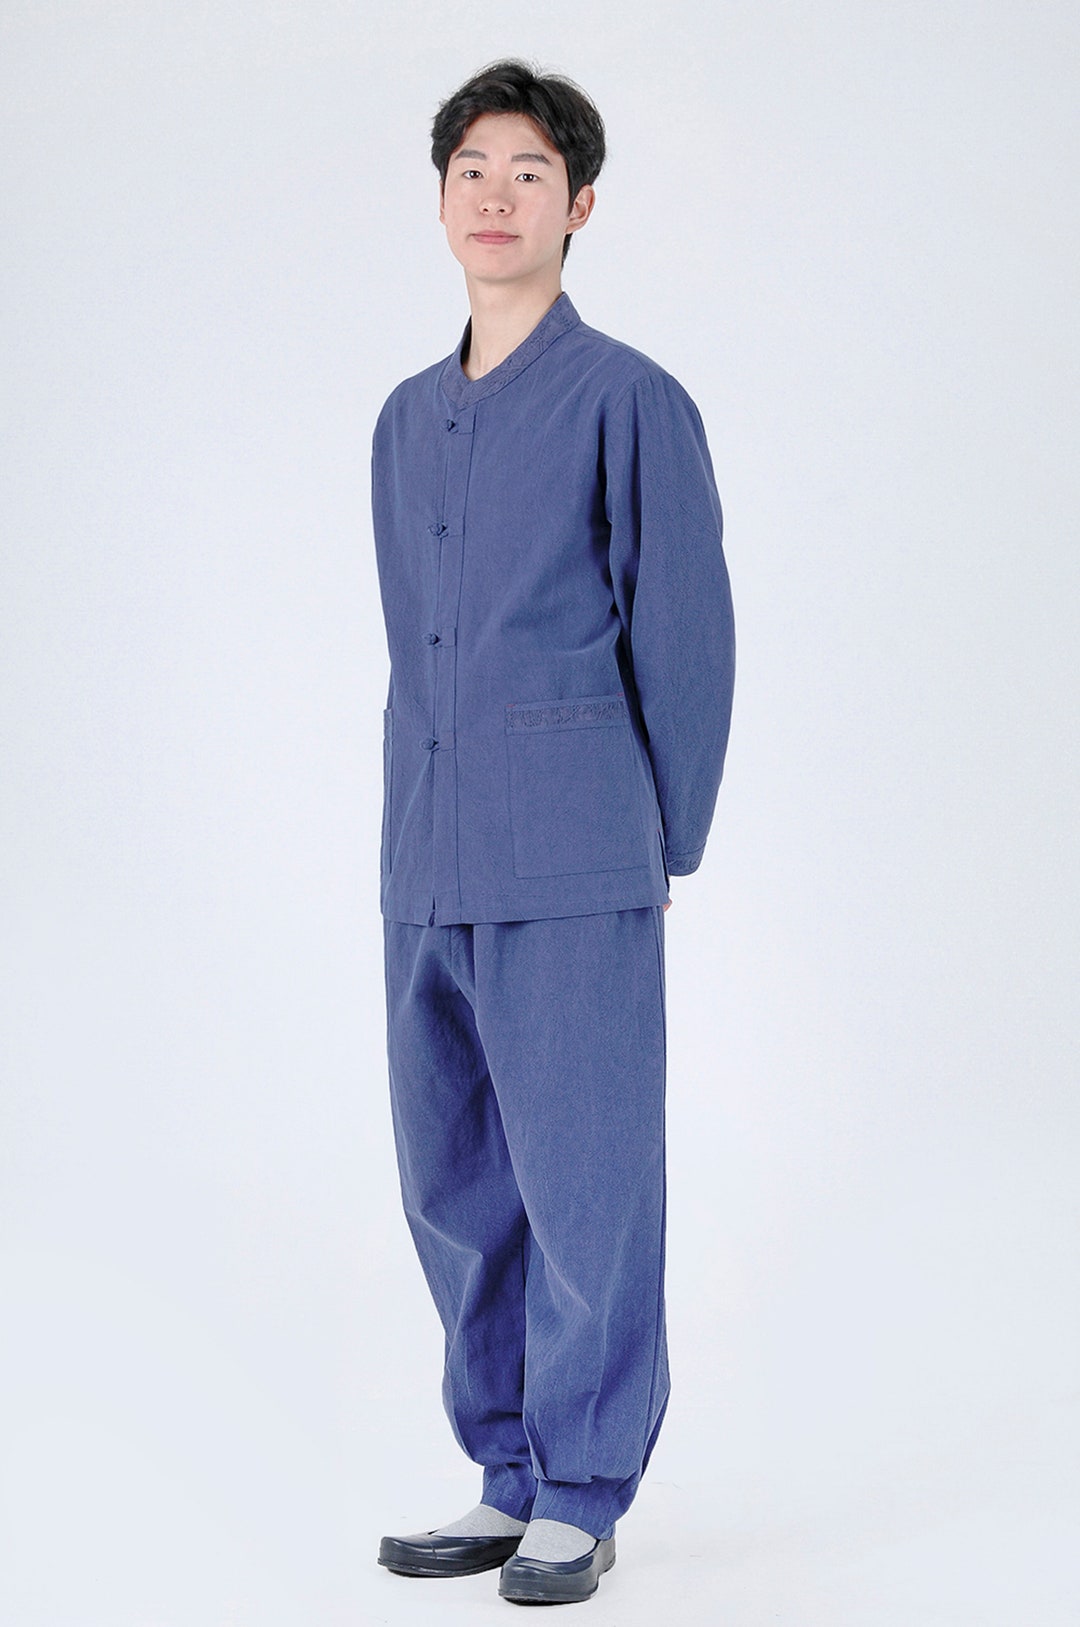 Modern Hanbok Man Woman Daily Comfortable Clothes Hanbok Korea - Etsy